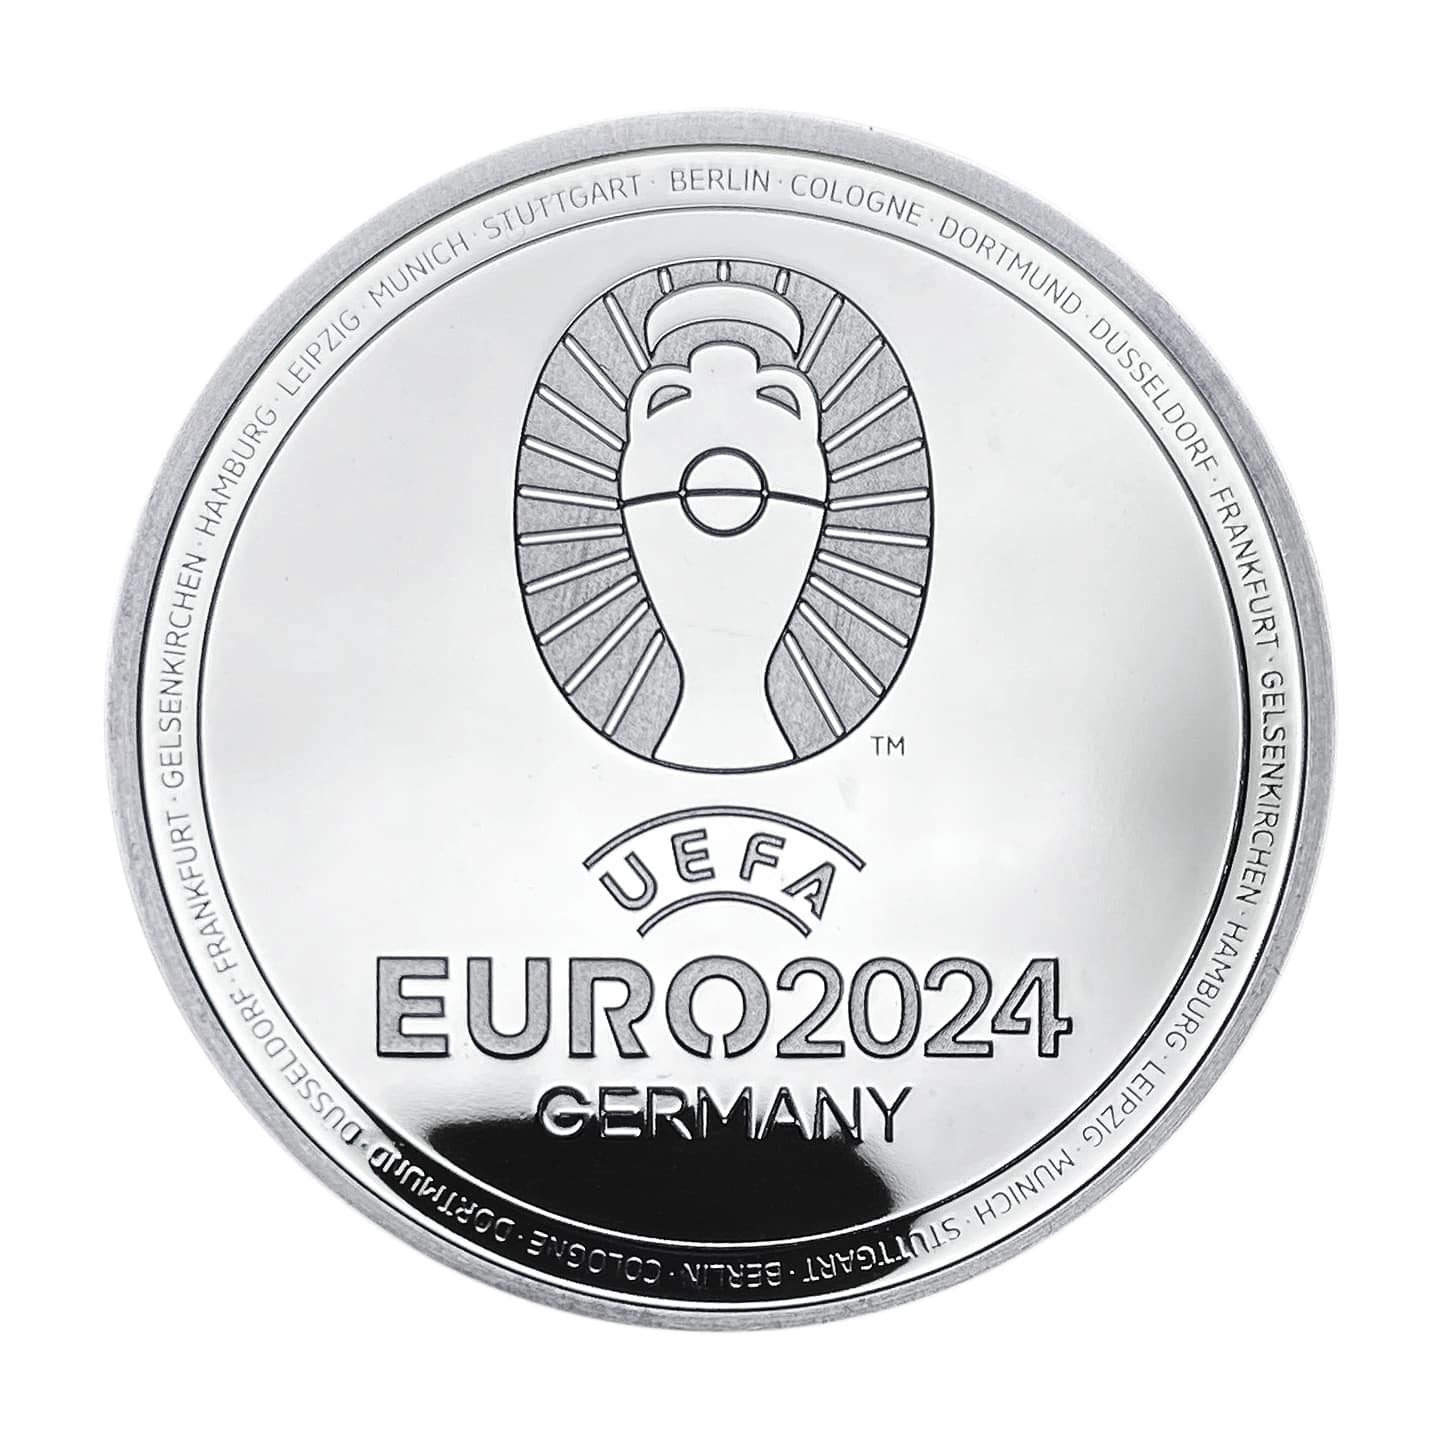 UEFA EURO 2024 Gold